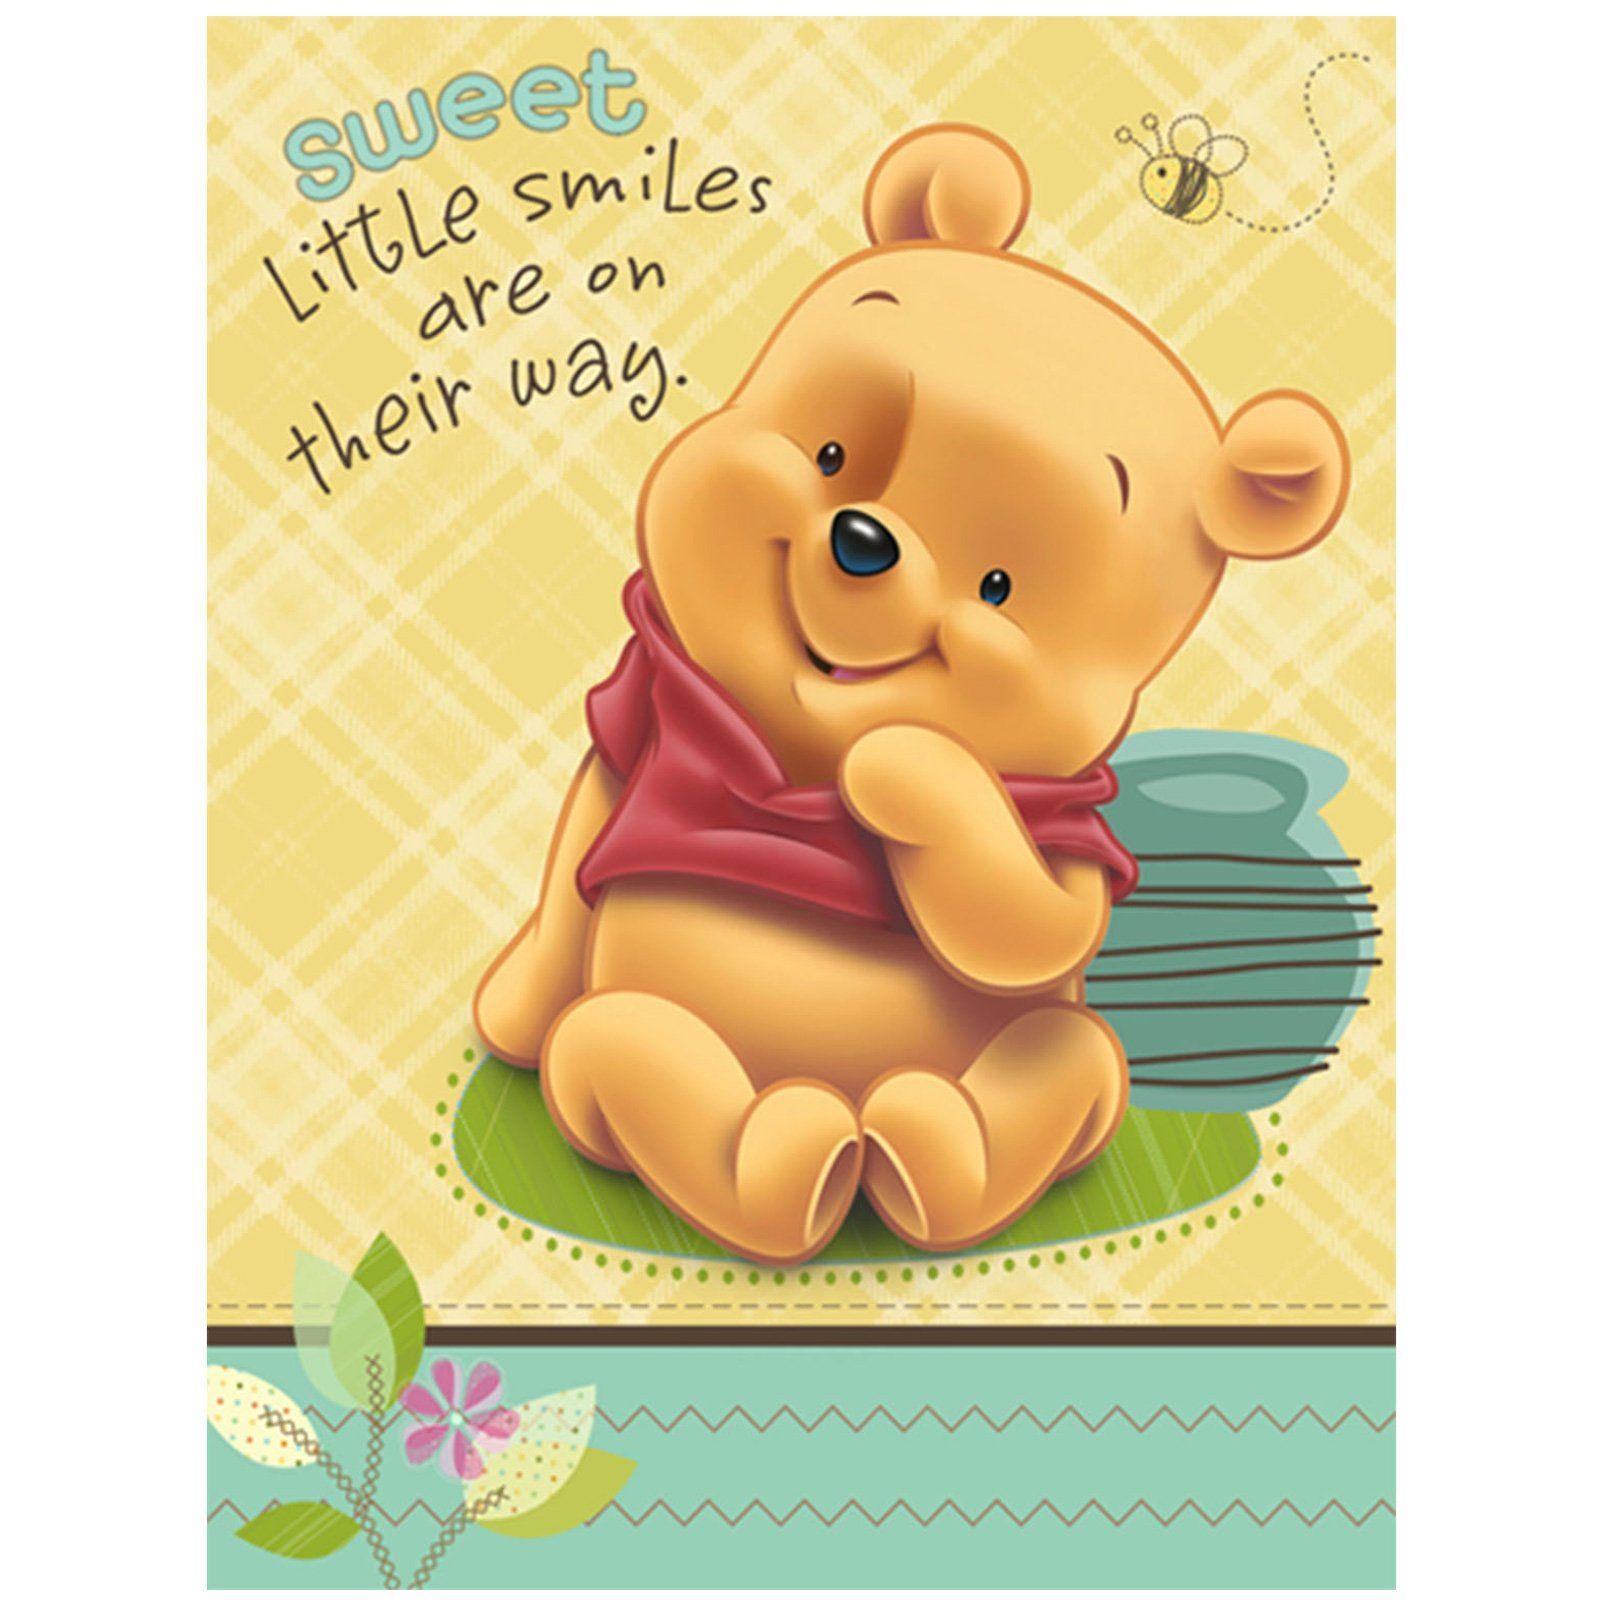 Cute Winnie The Pooh Wallpaper